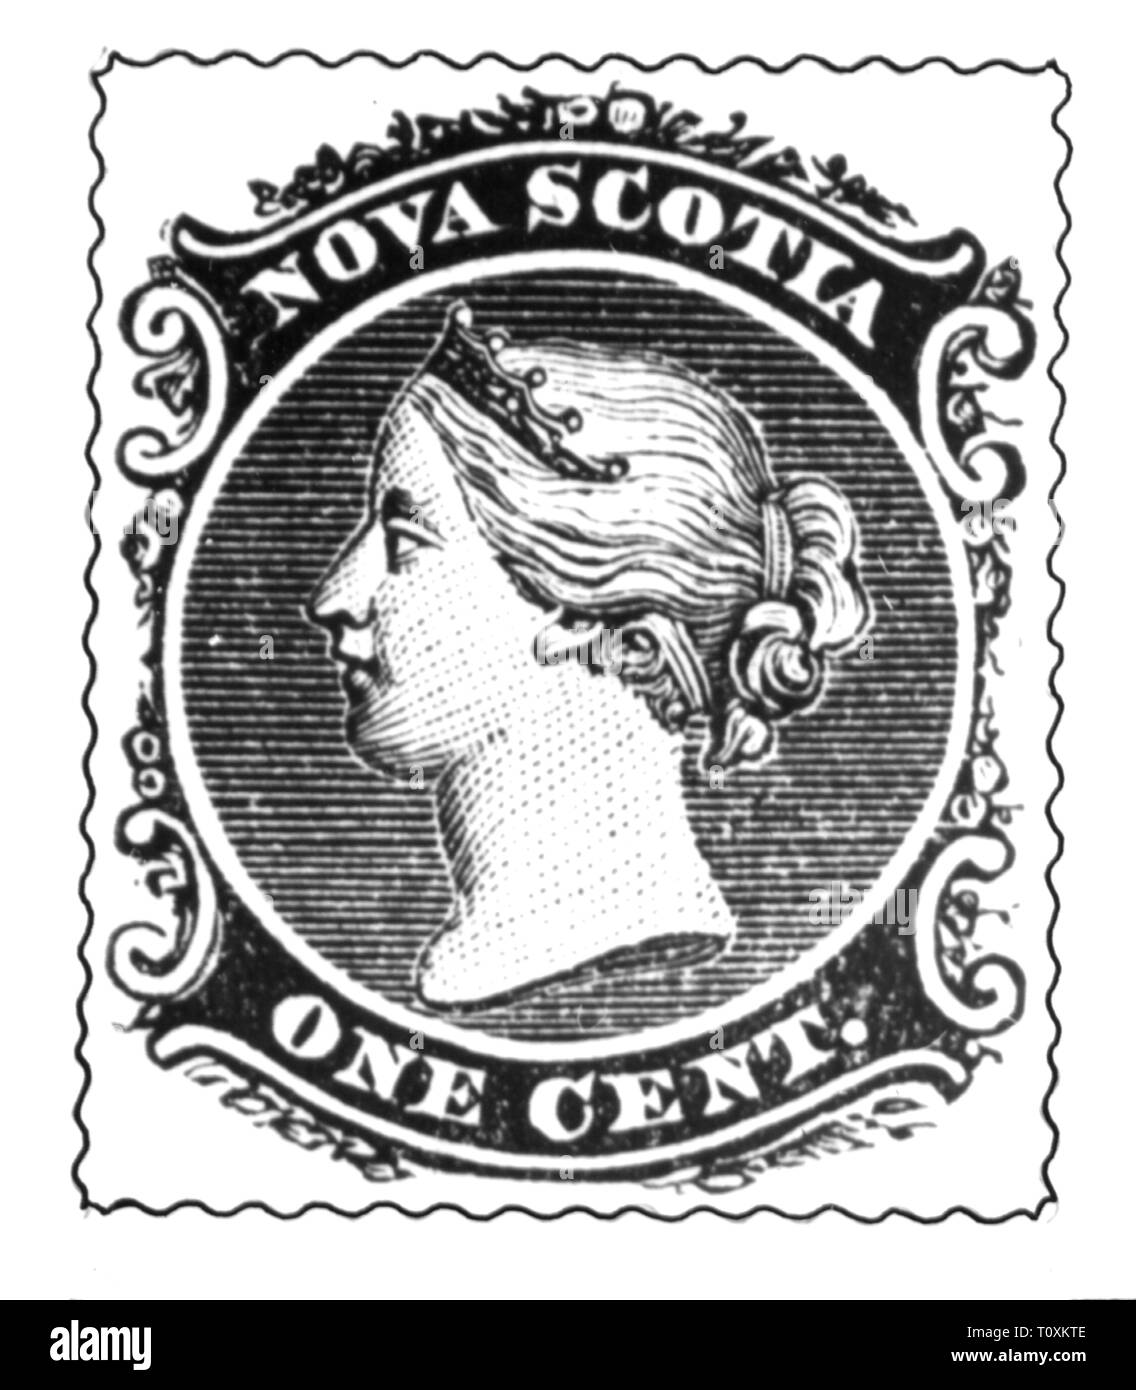 La poste, timbres-poste, du Canada, de la Nouvelle-Écosse, 1 100 timbres-poste, portrait de la reine Victoria I, date de publication : 1860, Additional-Rights Clearance-Info-Not-Available- Banque D'Images